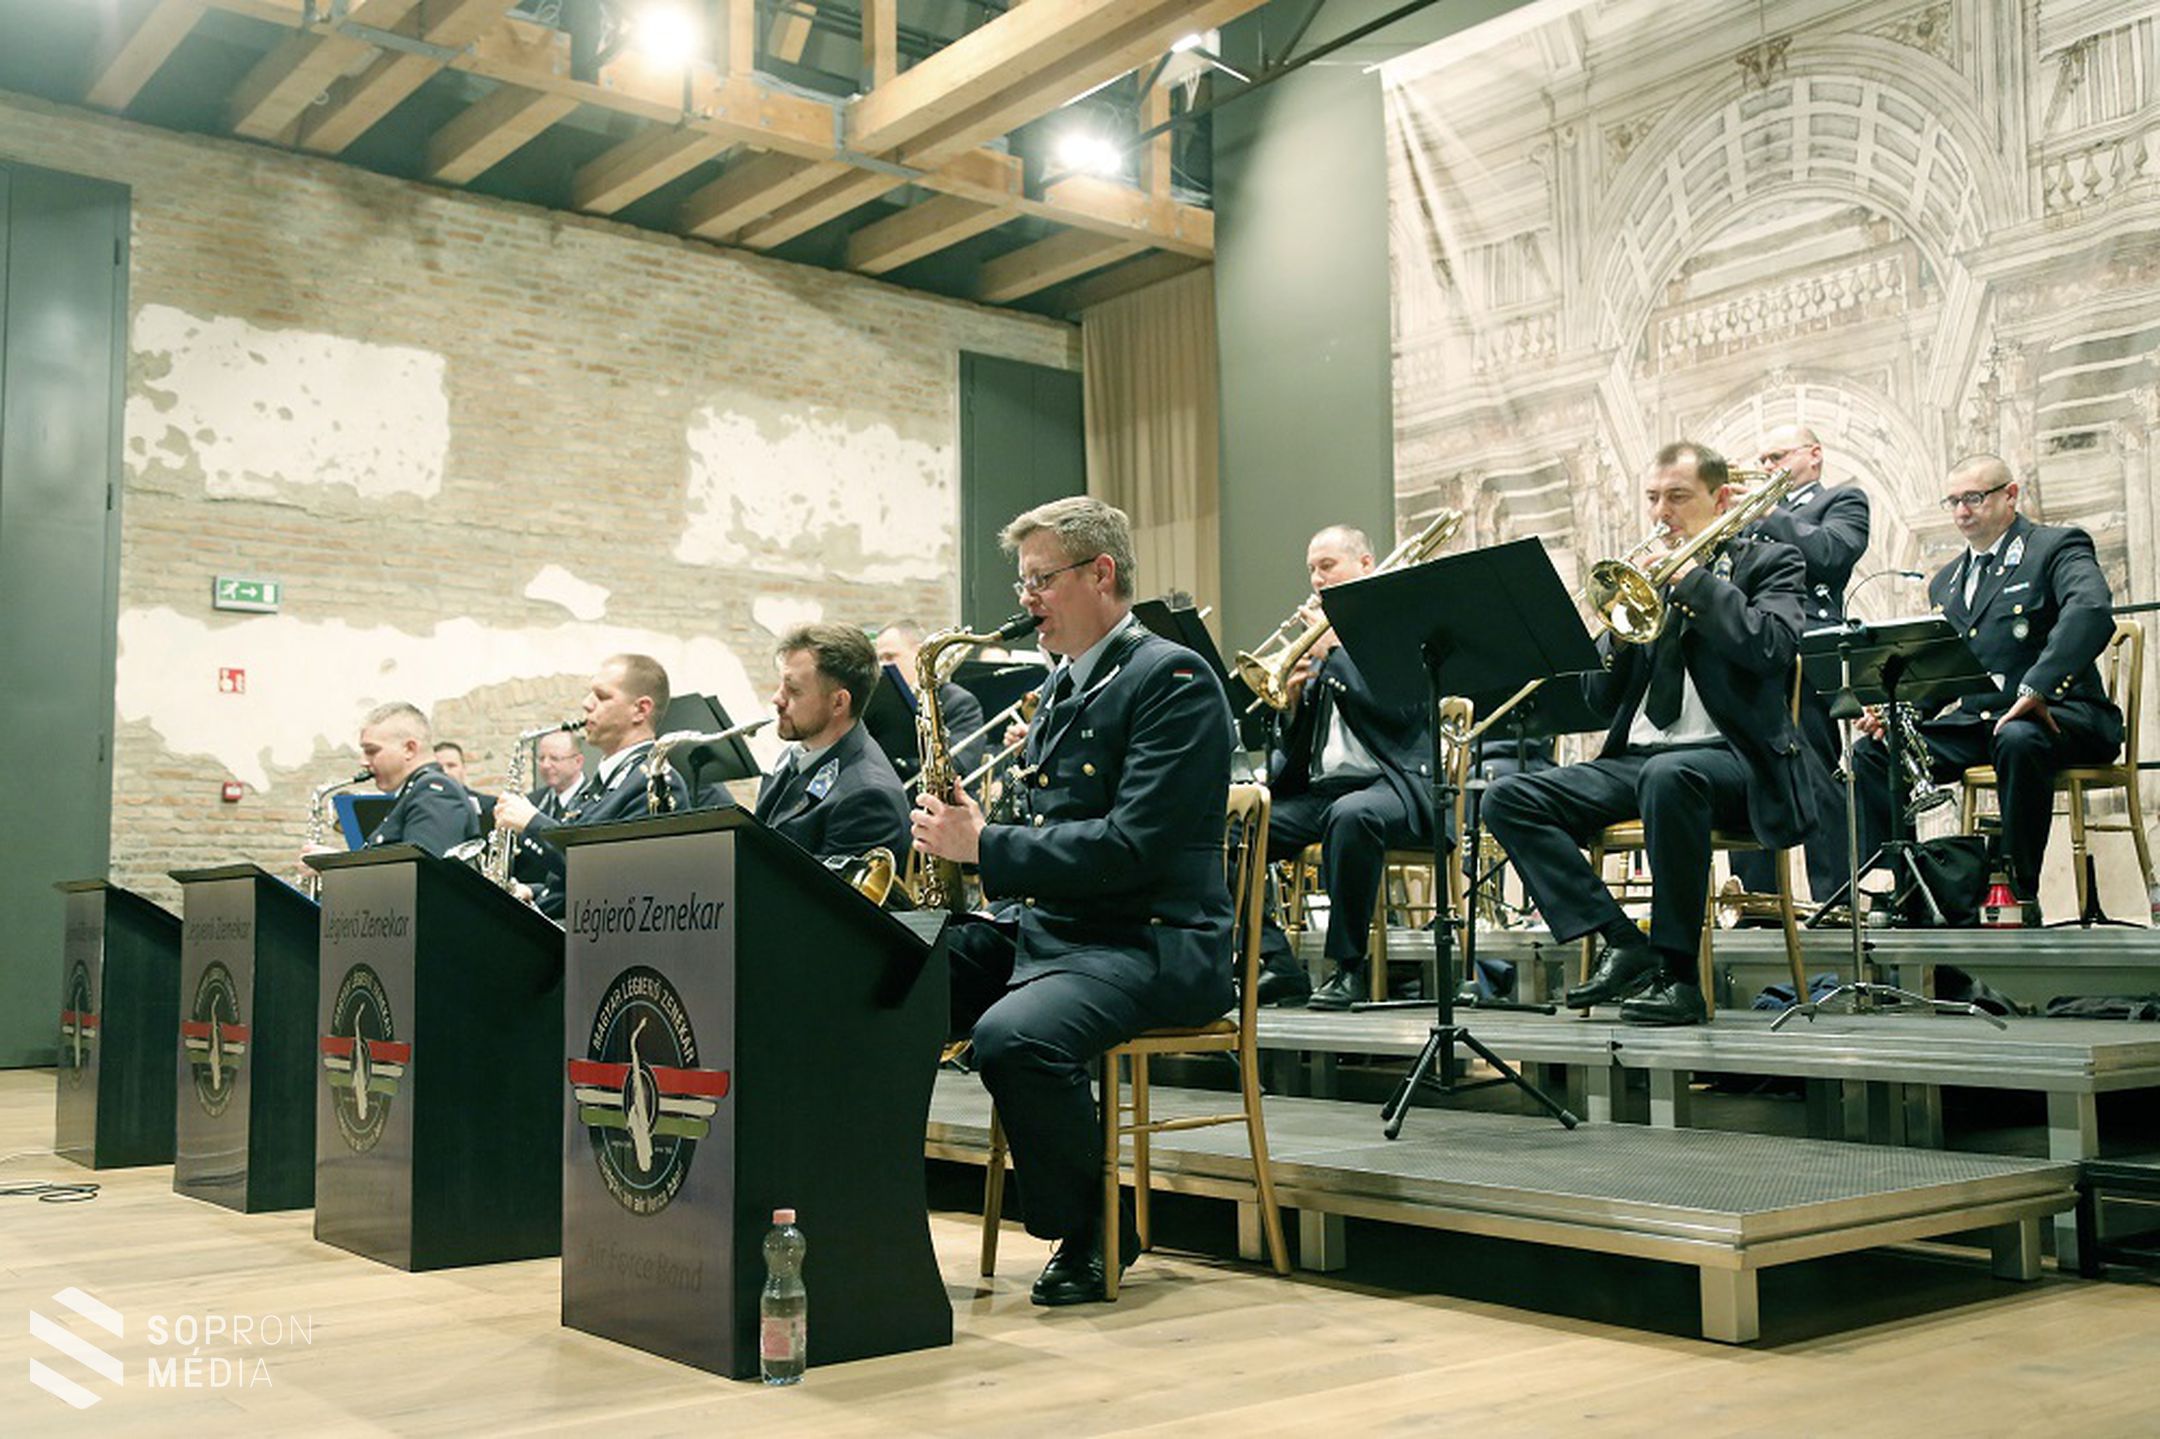 Eszterháza-Fertőd: Nagysikerű légierő zenekari ünnepi koncert
